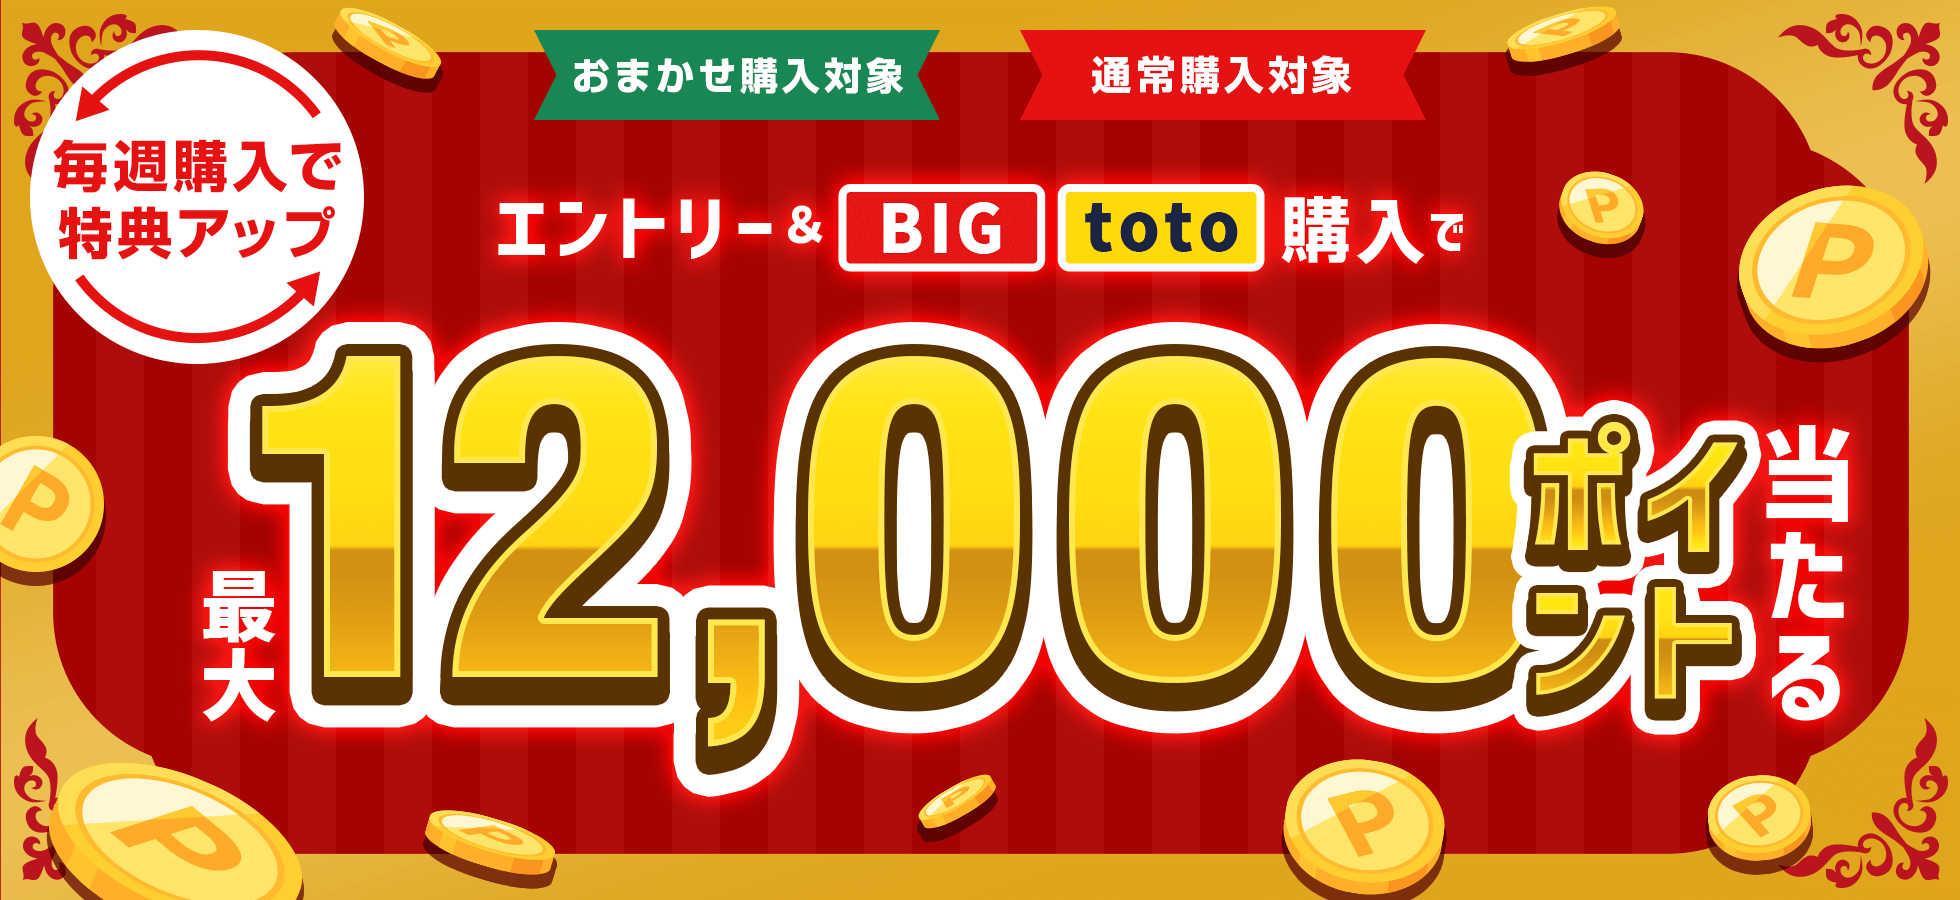 【楽天toto】毎週購入で特典アップ！エントリー＆BIG/toto購入で最大12,000ポイント当たる